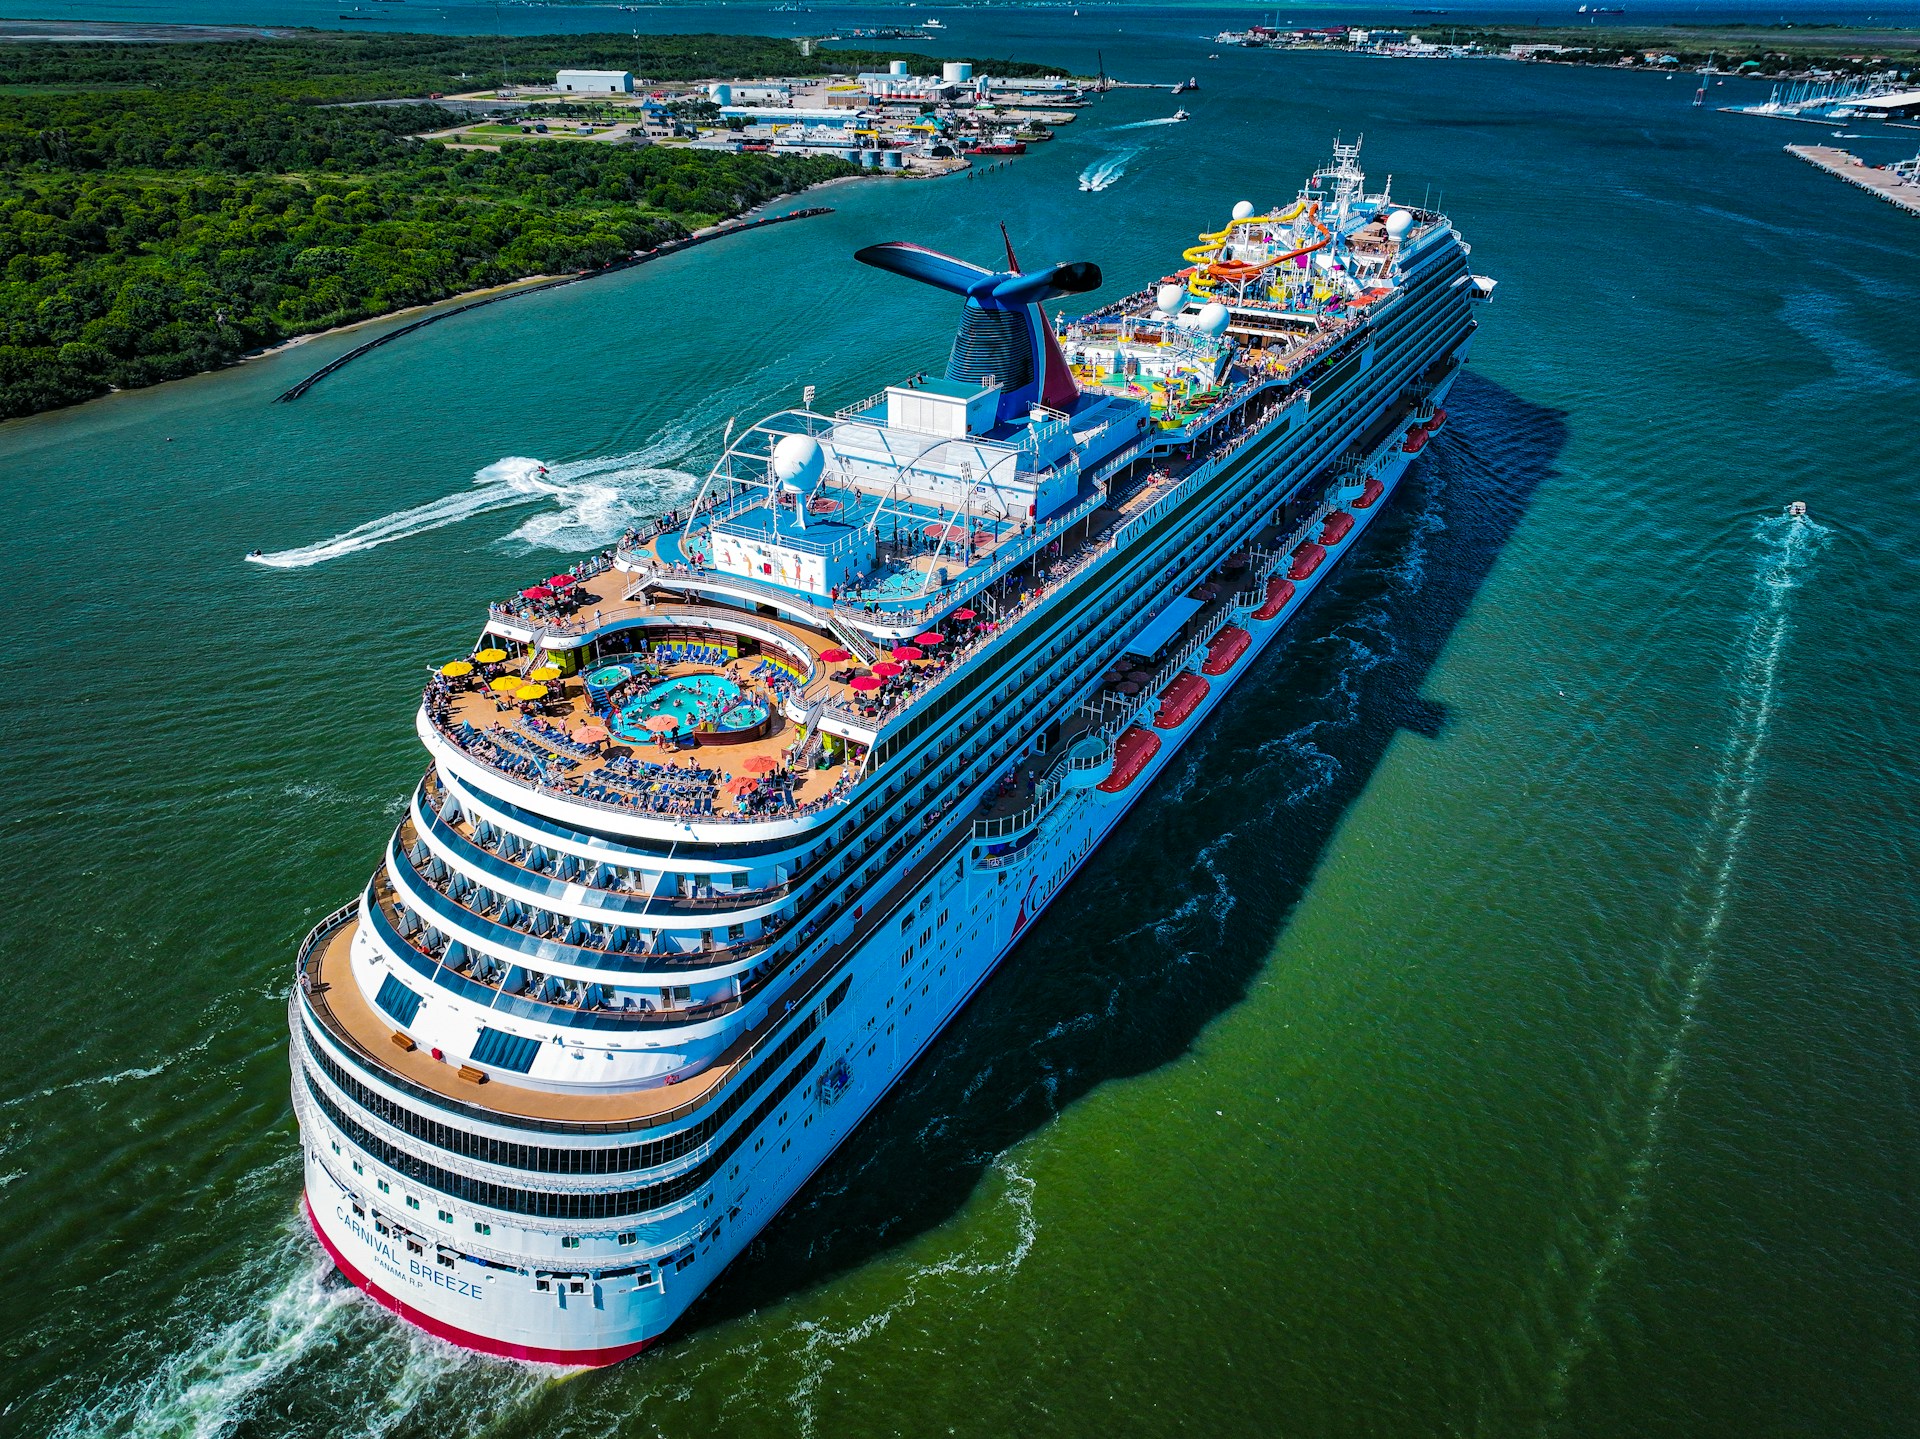 Cruise ship sailing through the water in Galveston, Texas